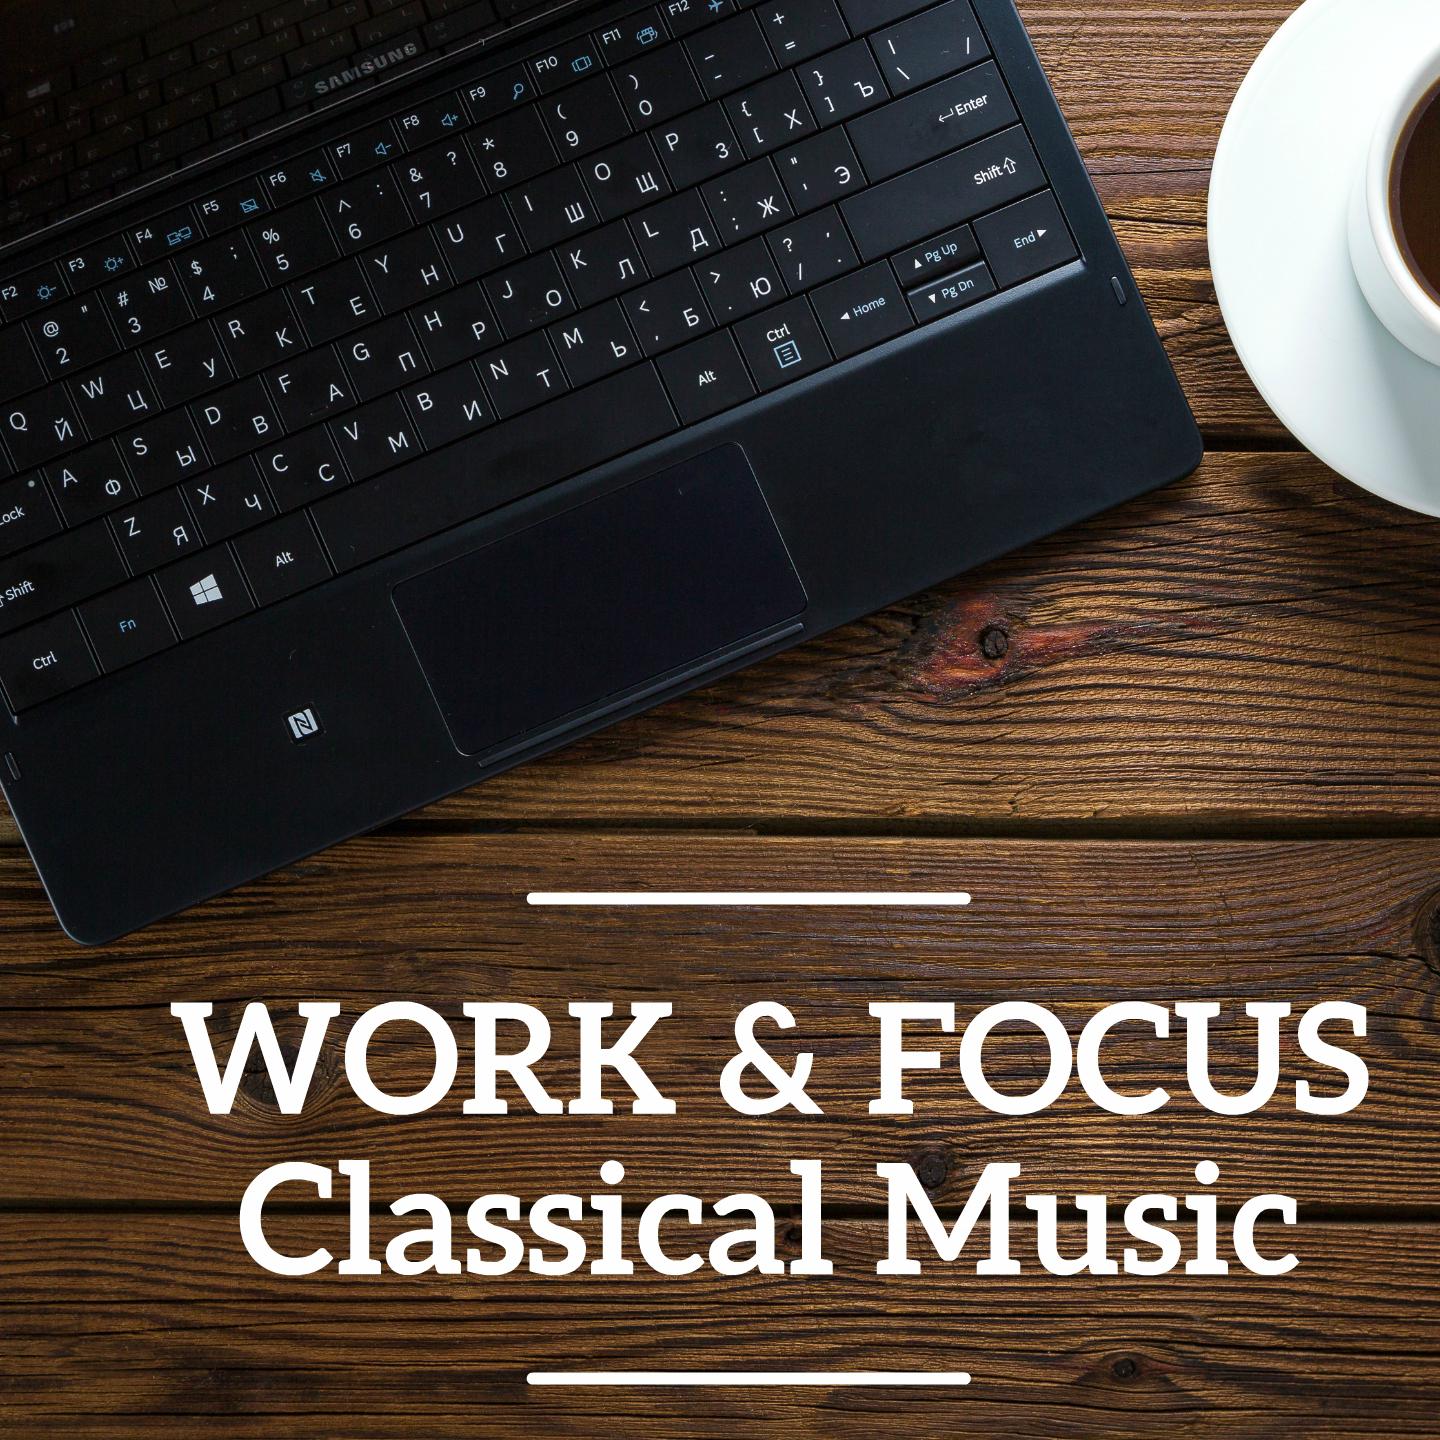 Work & Focus Classical Music